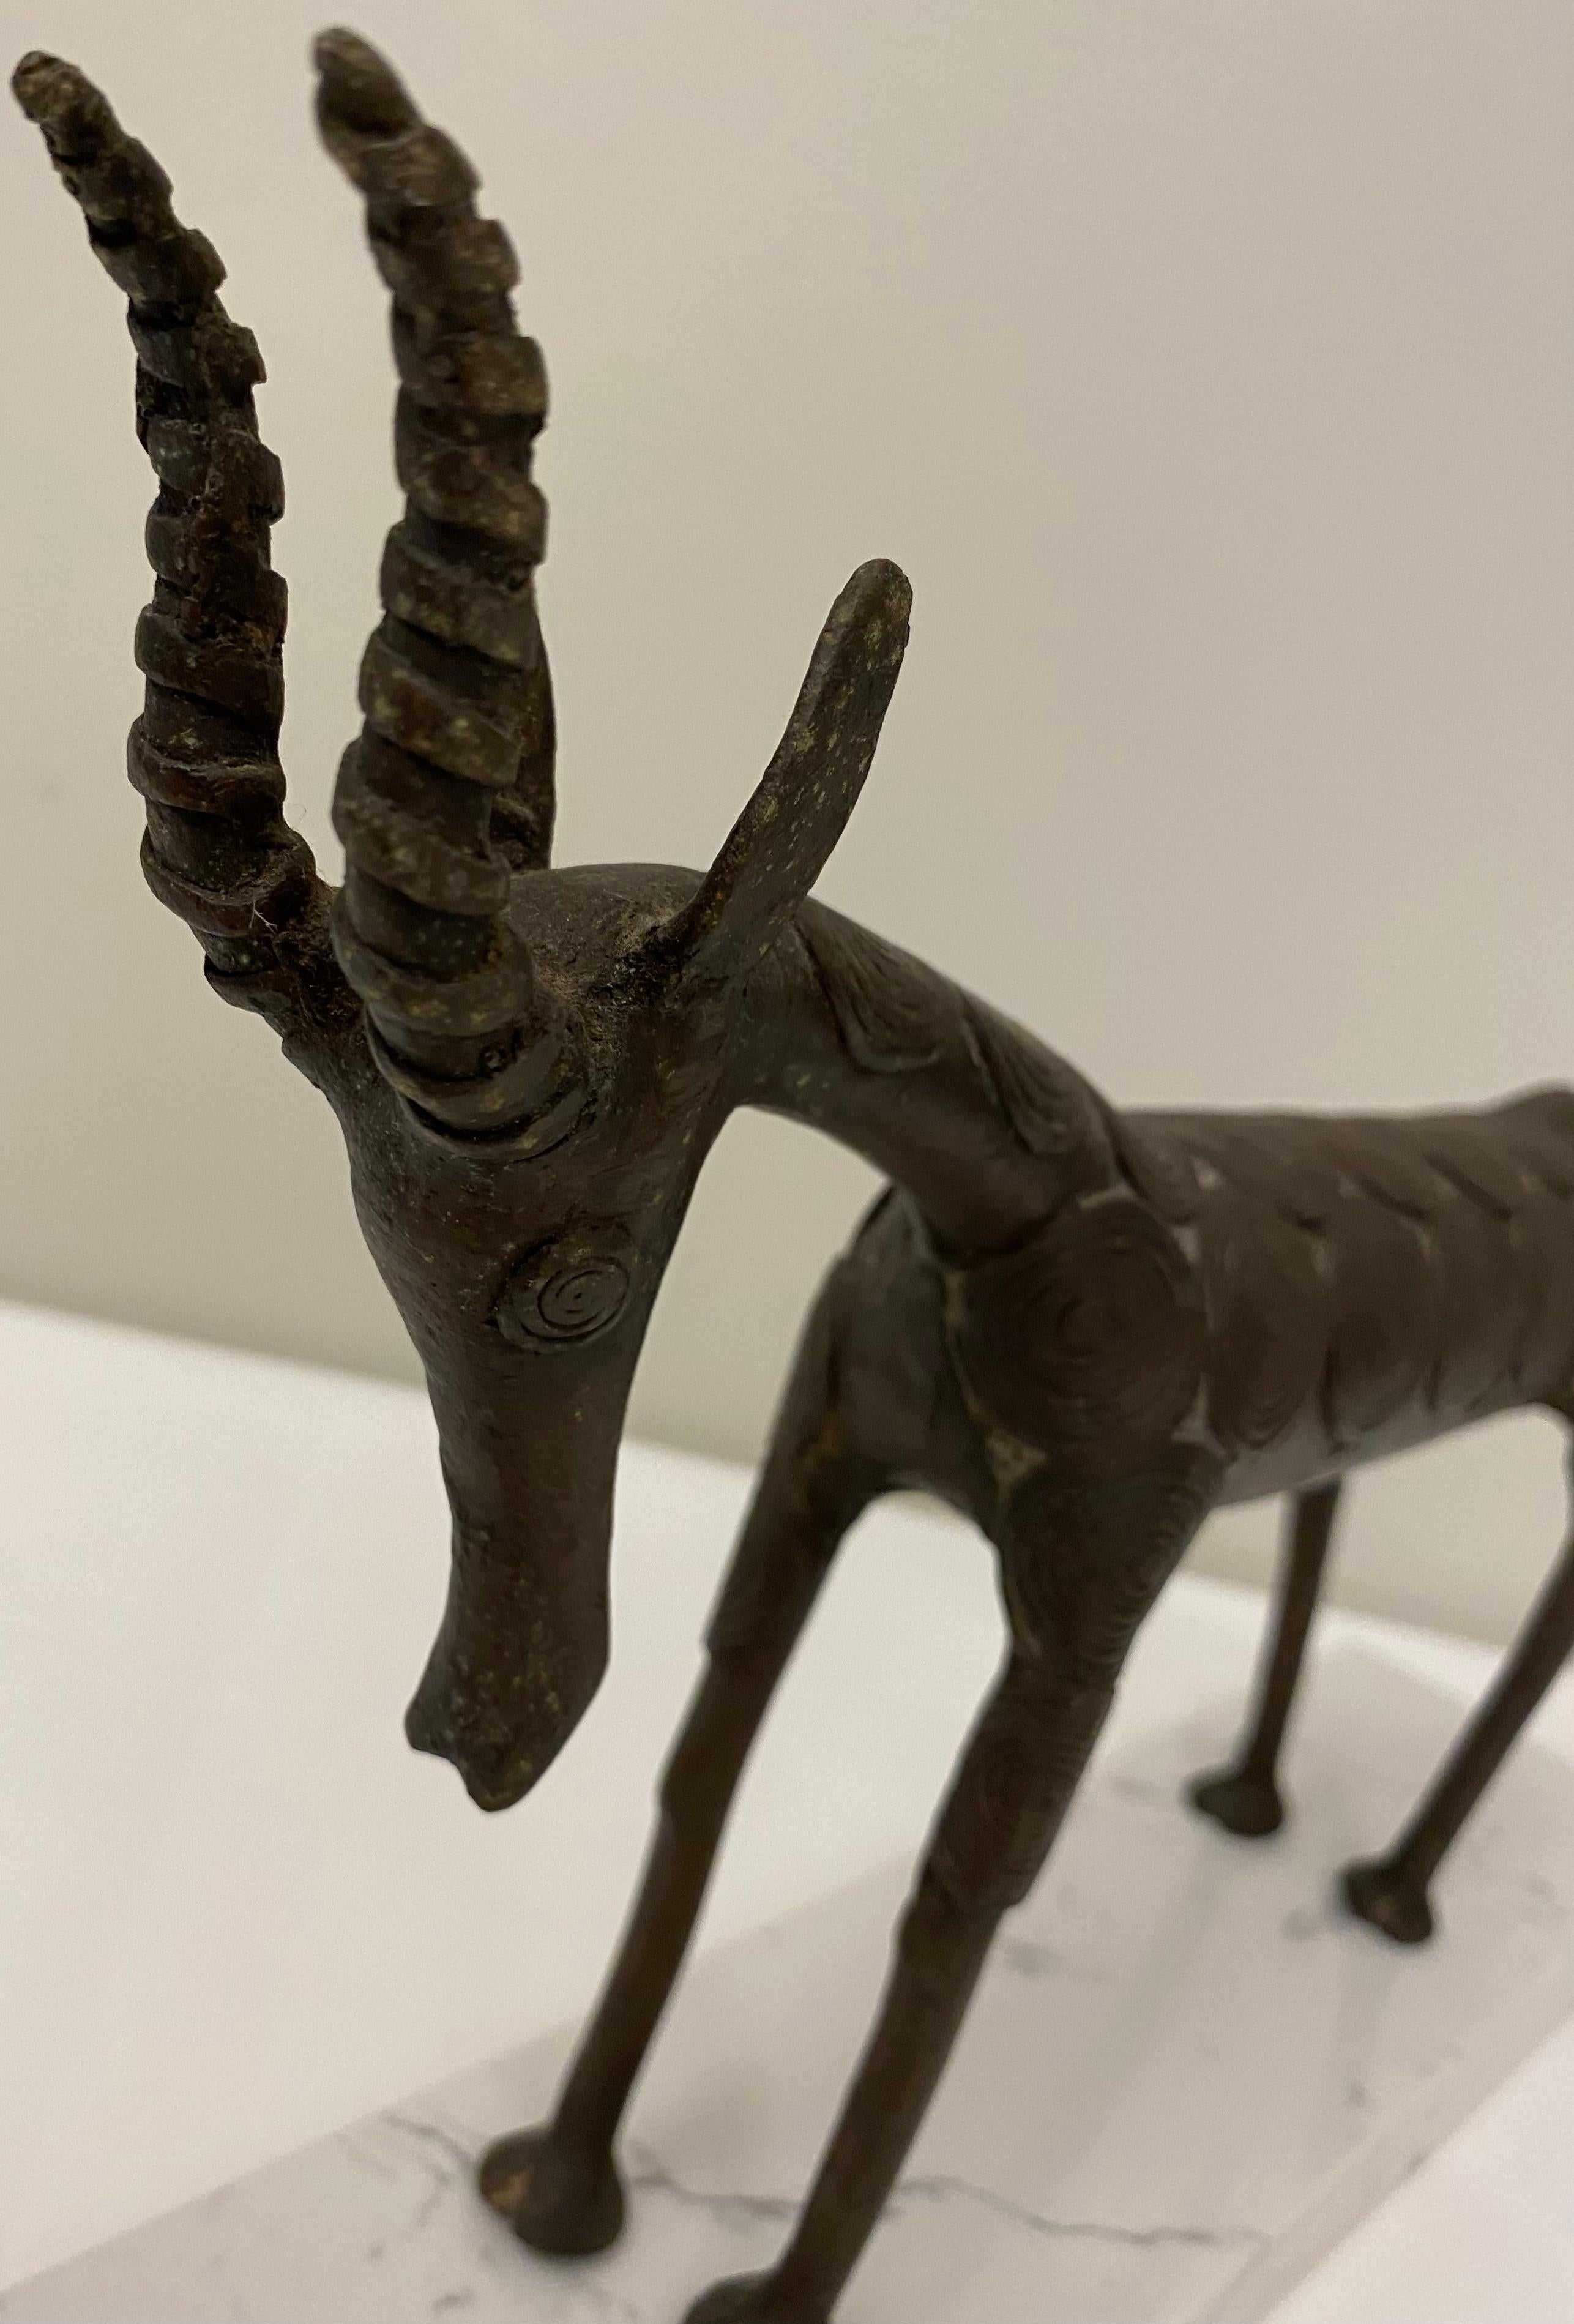 Antilope africaine, sculpture tribale béninoise réalisée à la main.
Détails en bronze martelé à la main sur des petites pièces de bois fixées par de petits clous et de nombreuses sculptures. 

Cette forme d'objet est l'un des exemples les plus